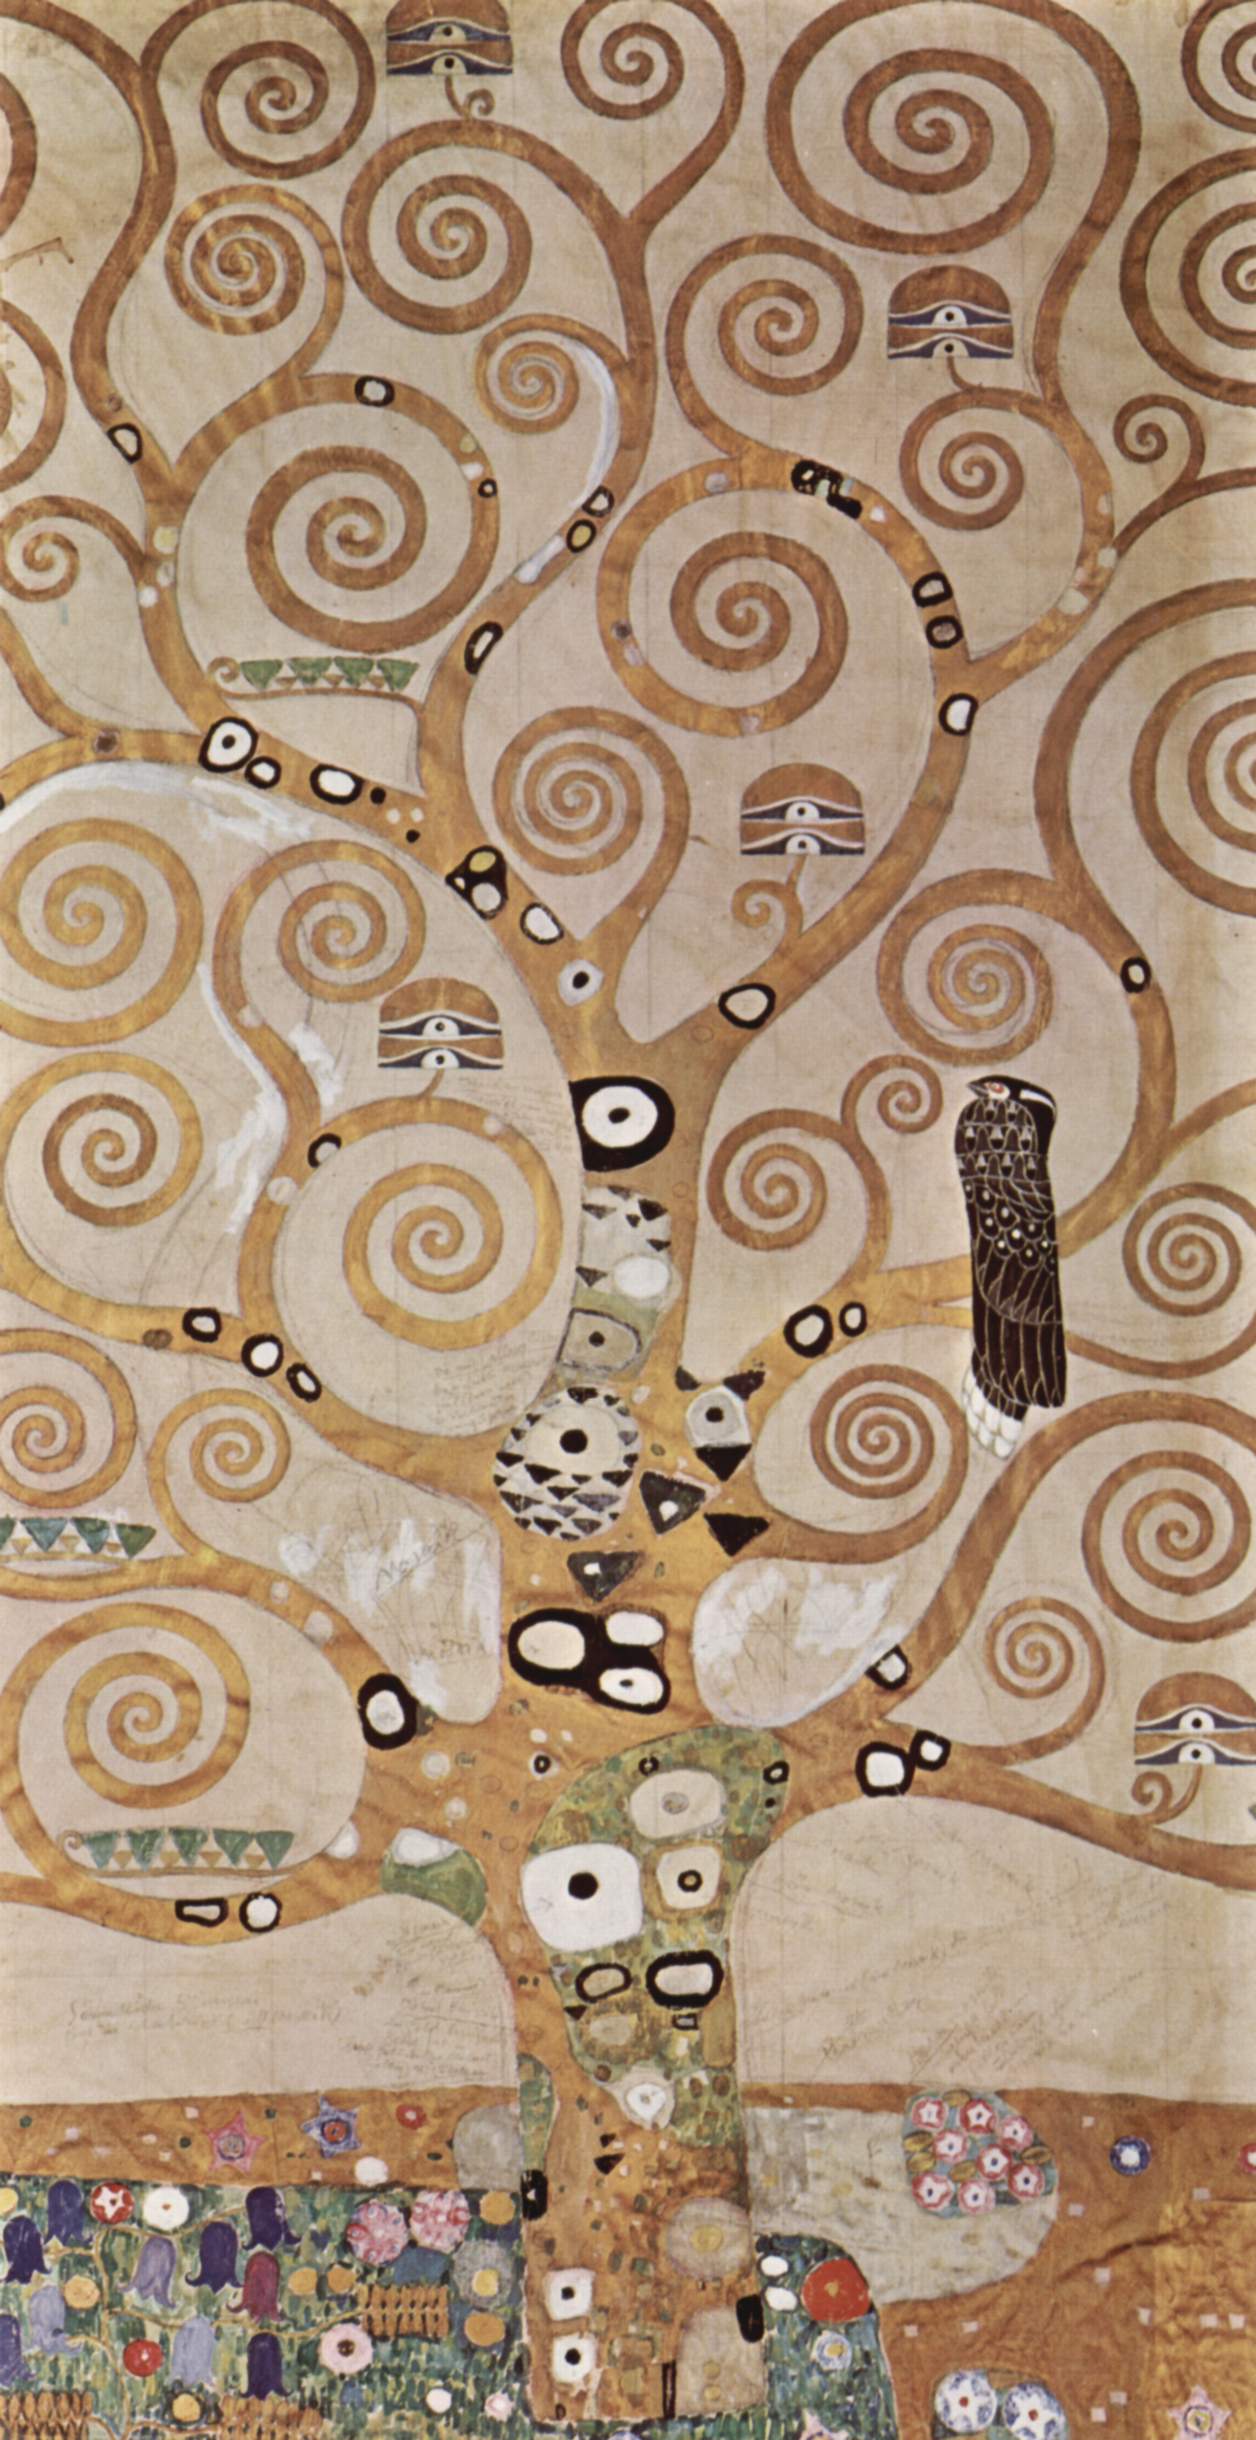 Árbol De La vida by Gustav Klimt - 1905 Museum für angewandte Kunst (MAK)